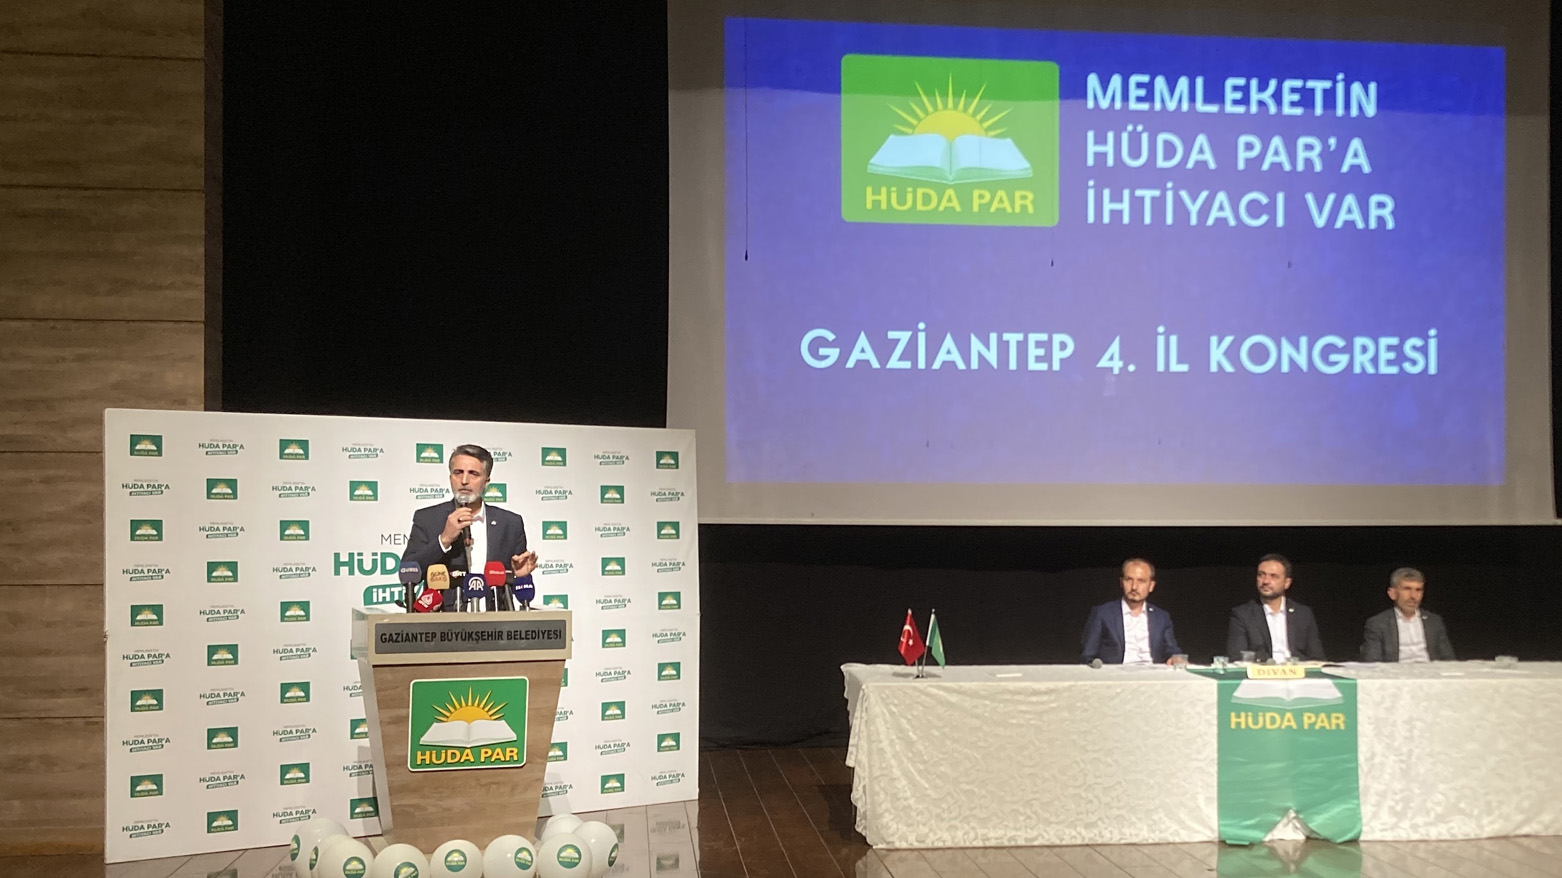 HÜDA PAR Genel Başkan Yardımcısı ve Parti Sözcüsü Yunus Emiroğlu